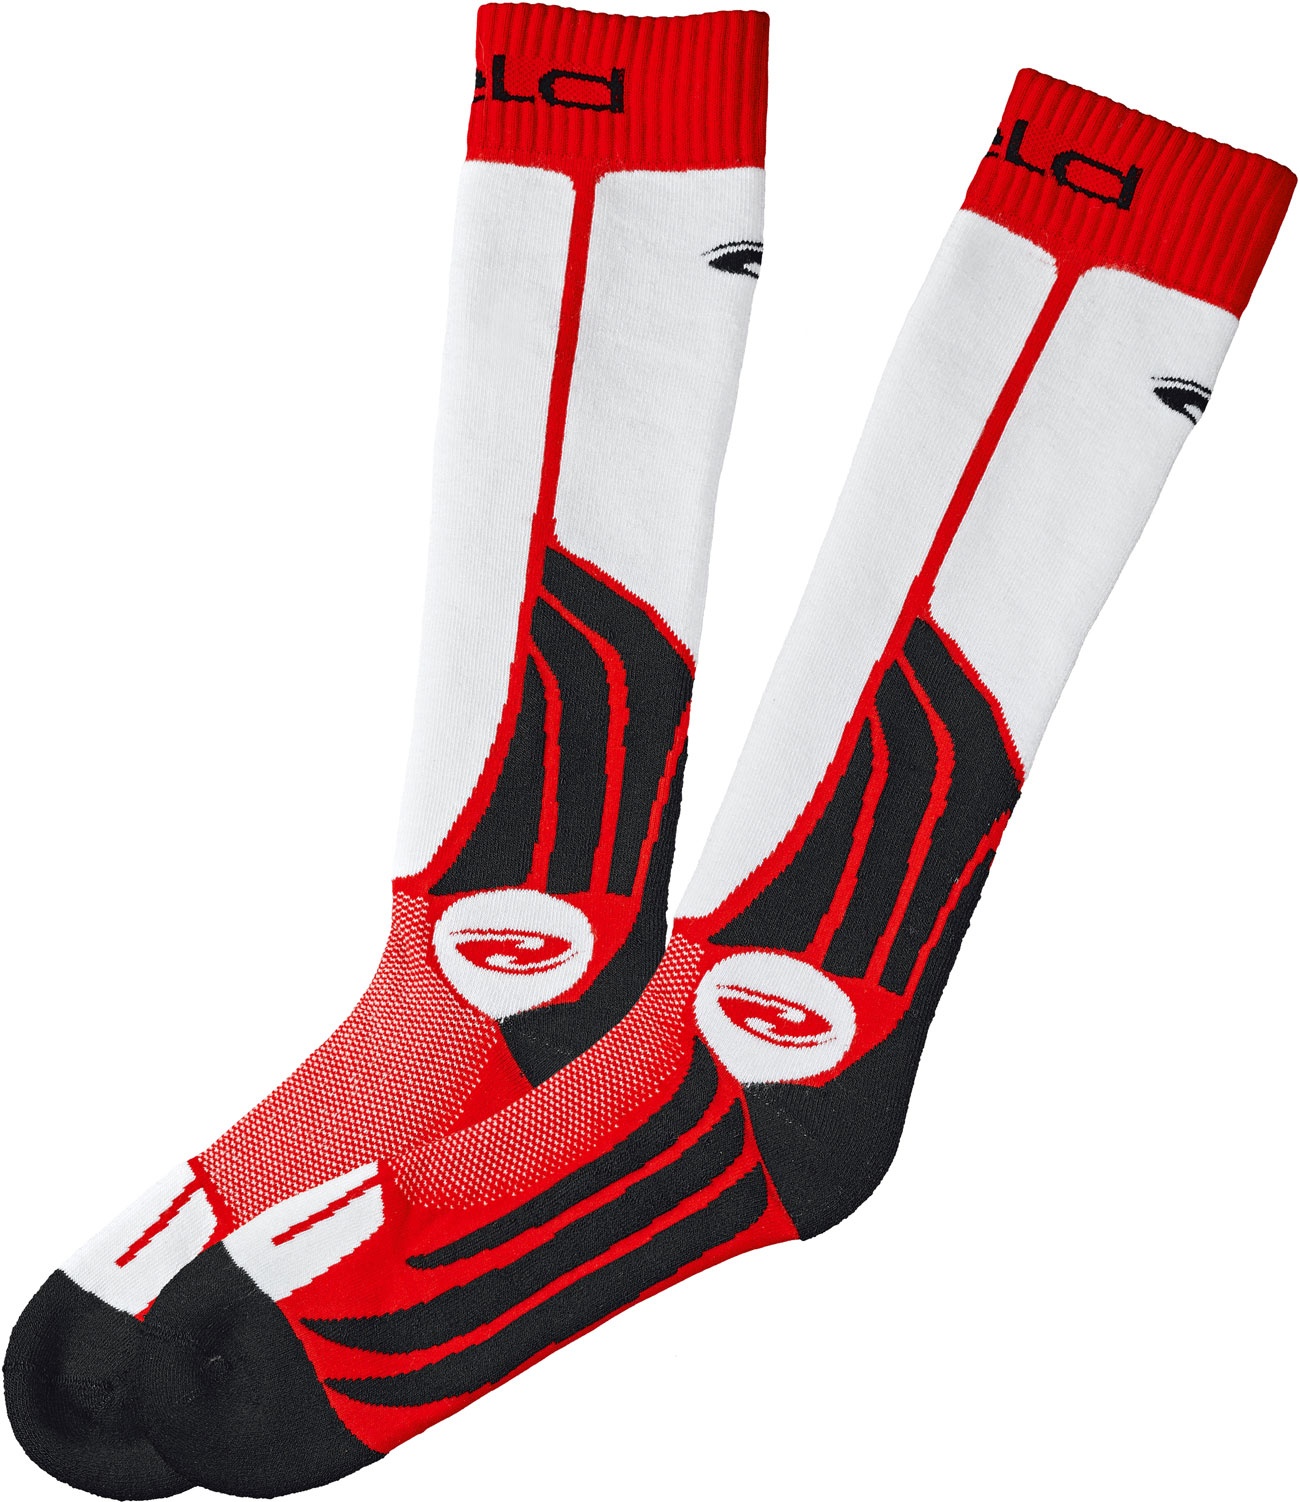 Held Race Socks, Socken - Schwarz/Rot - M